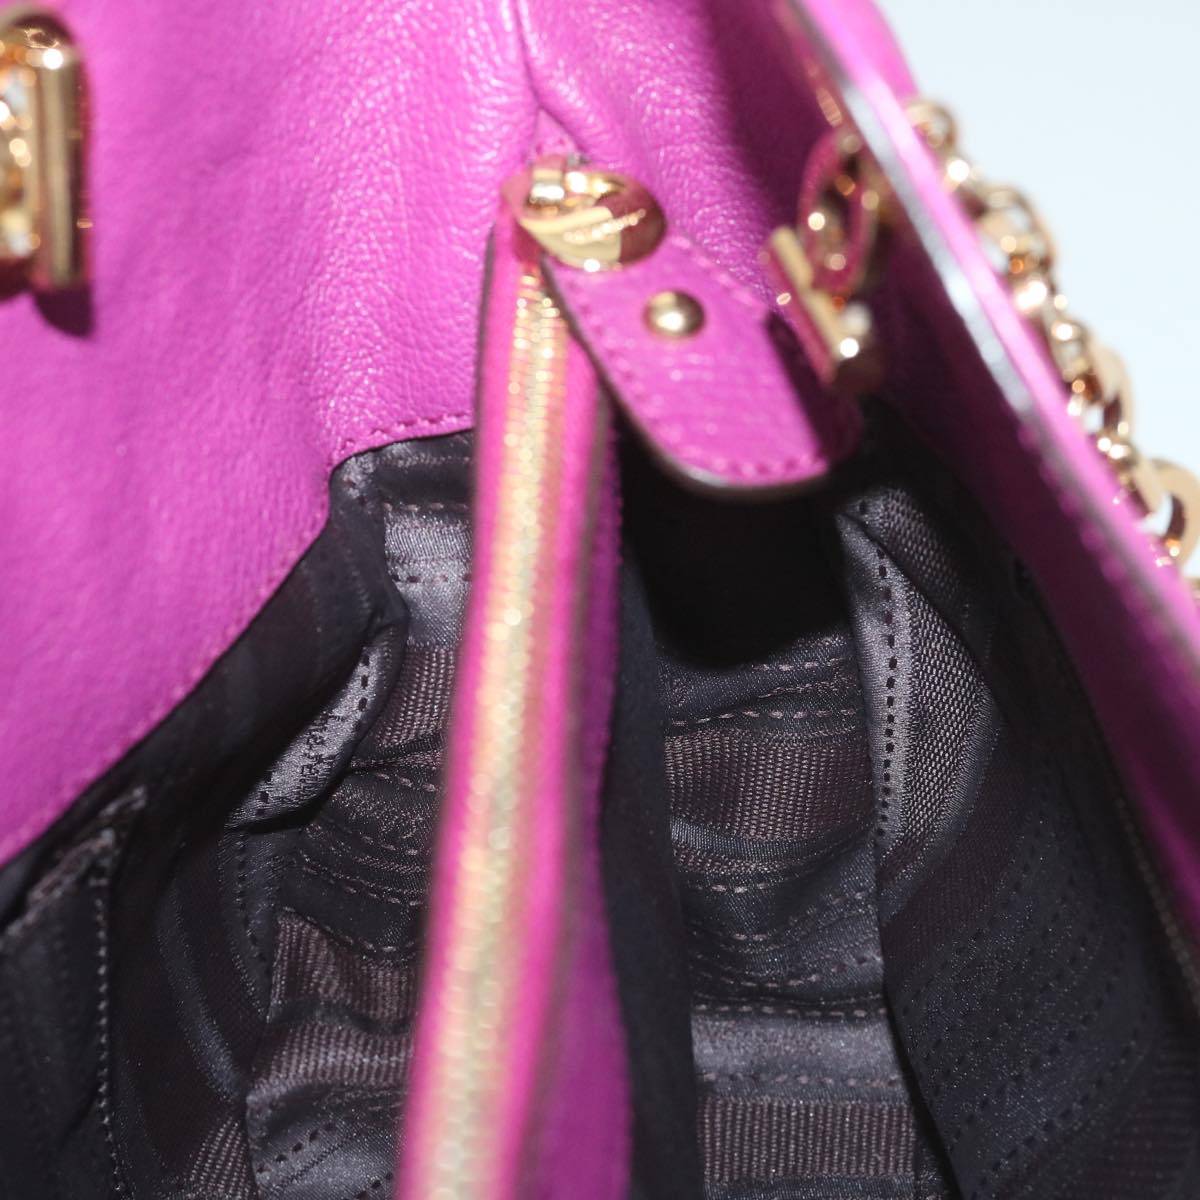 Salvatore Ferragamo Gancini Chain Tote Bag Leather Purple Auth 58628